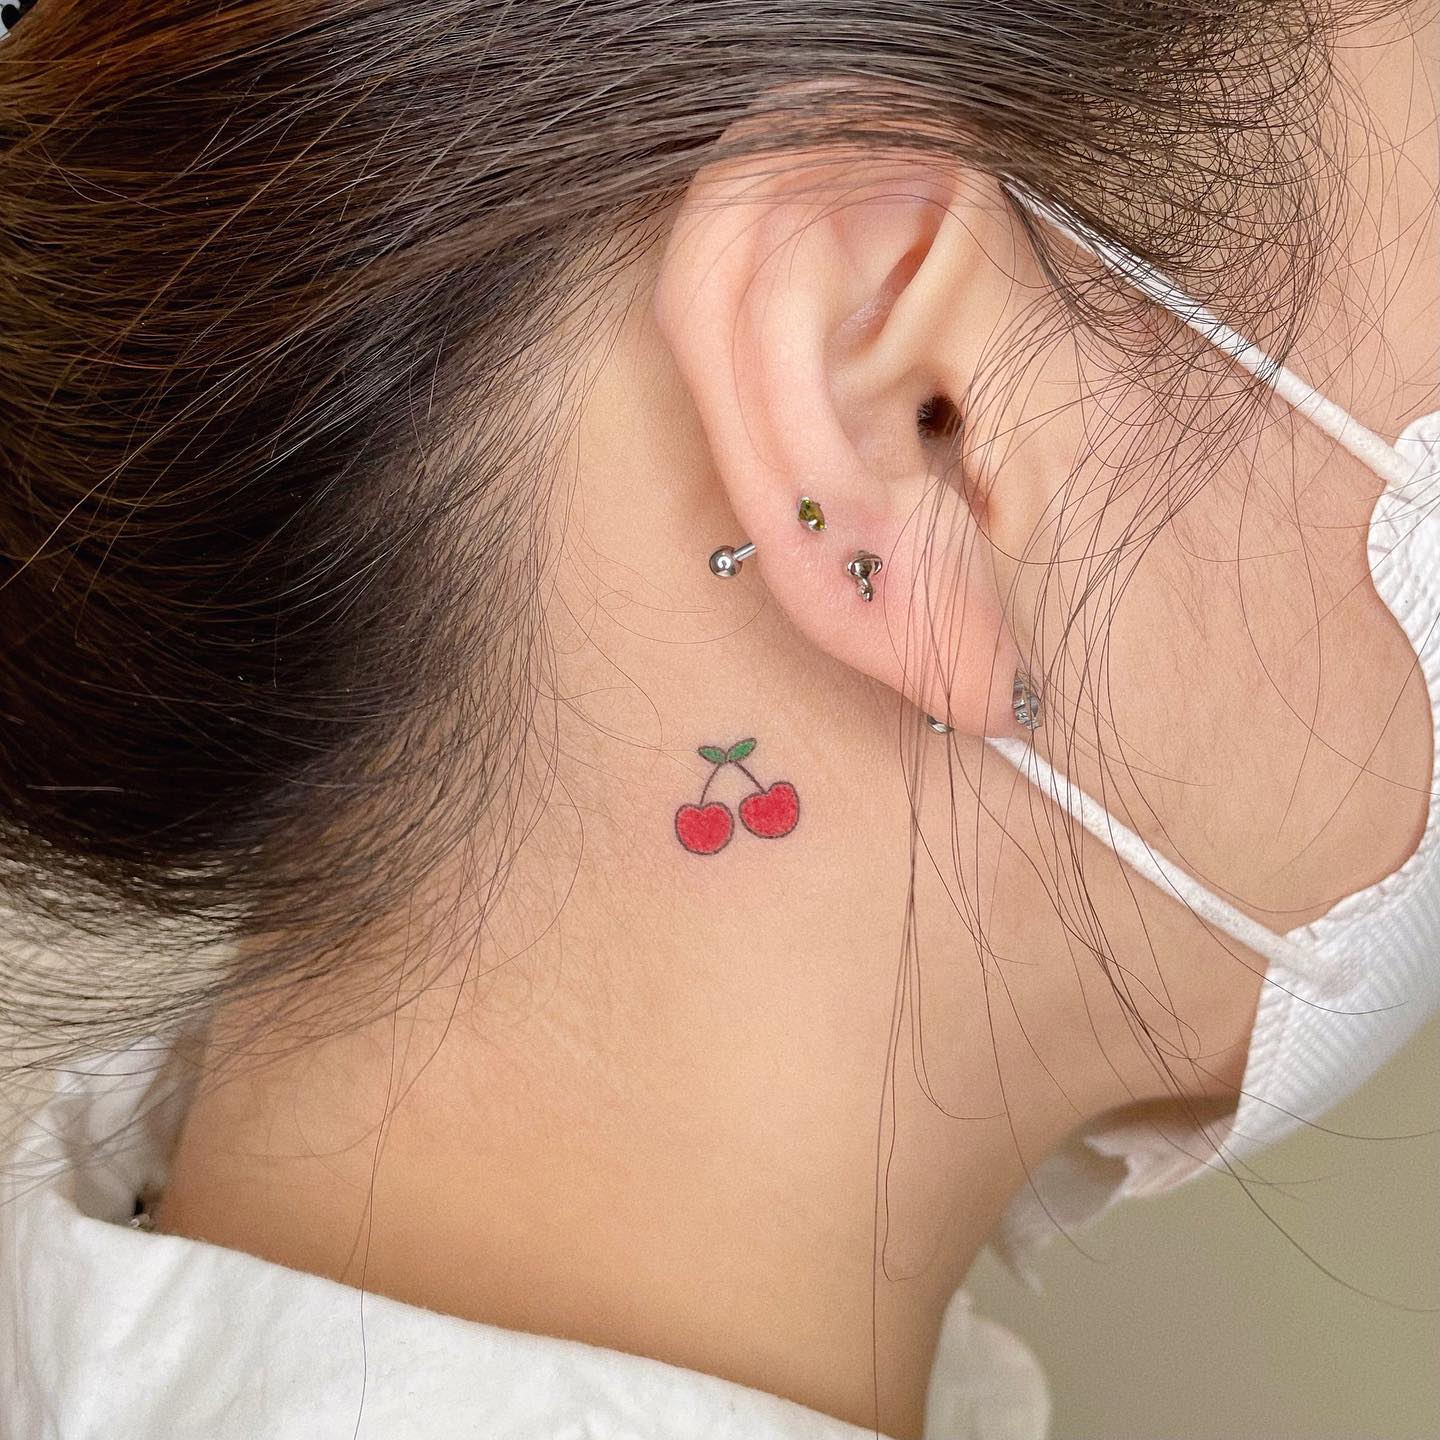 A Cherry Tattoo Behind Ear